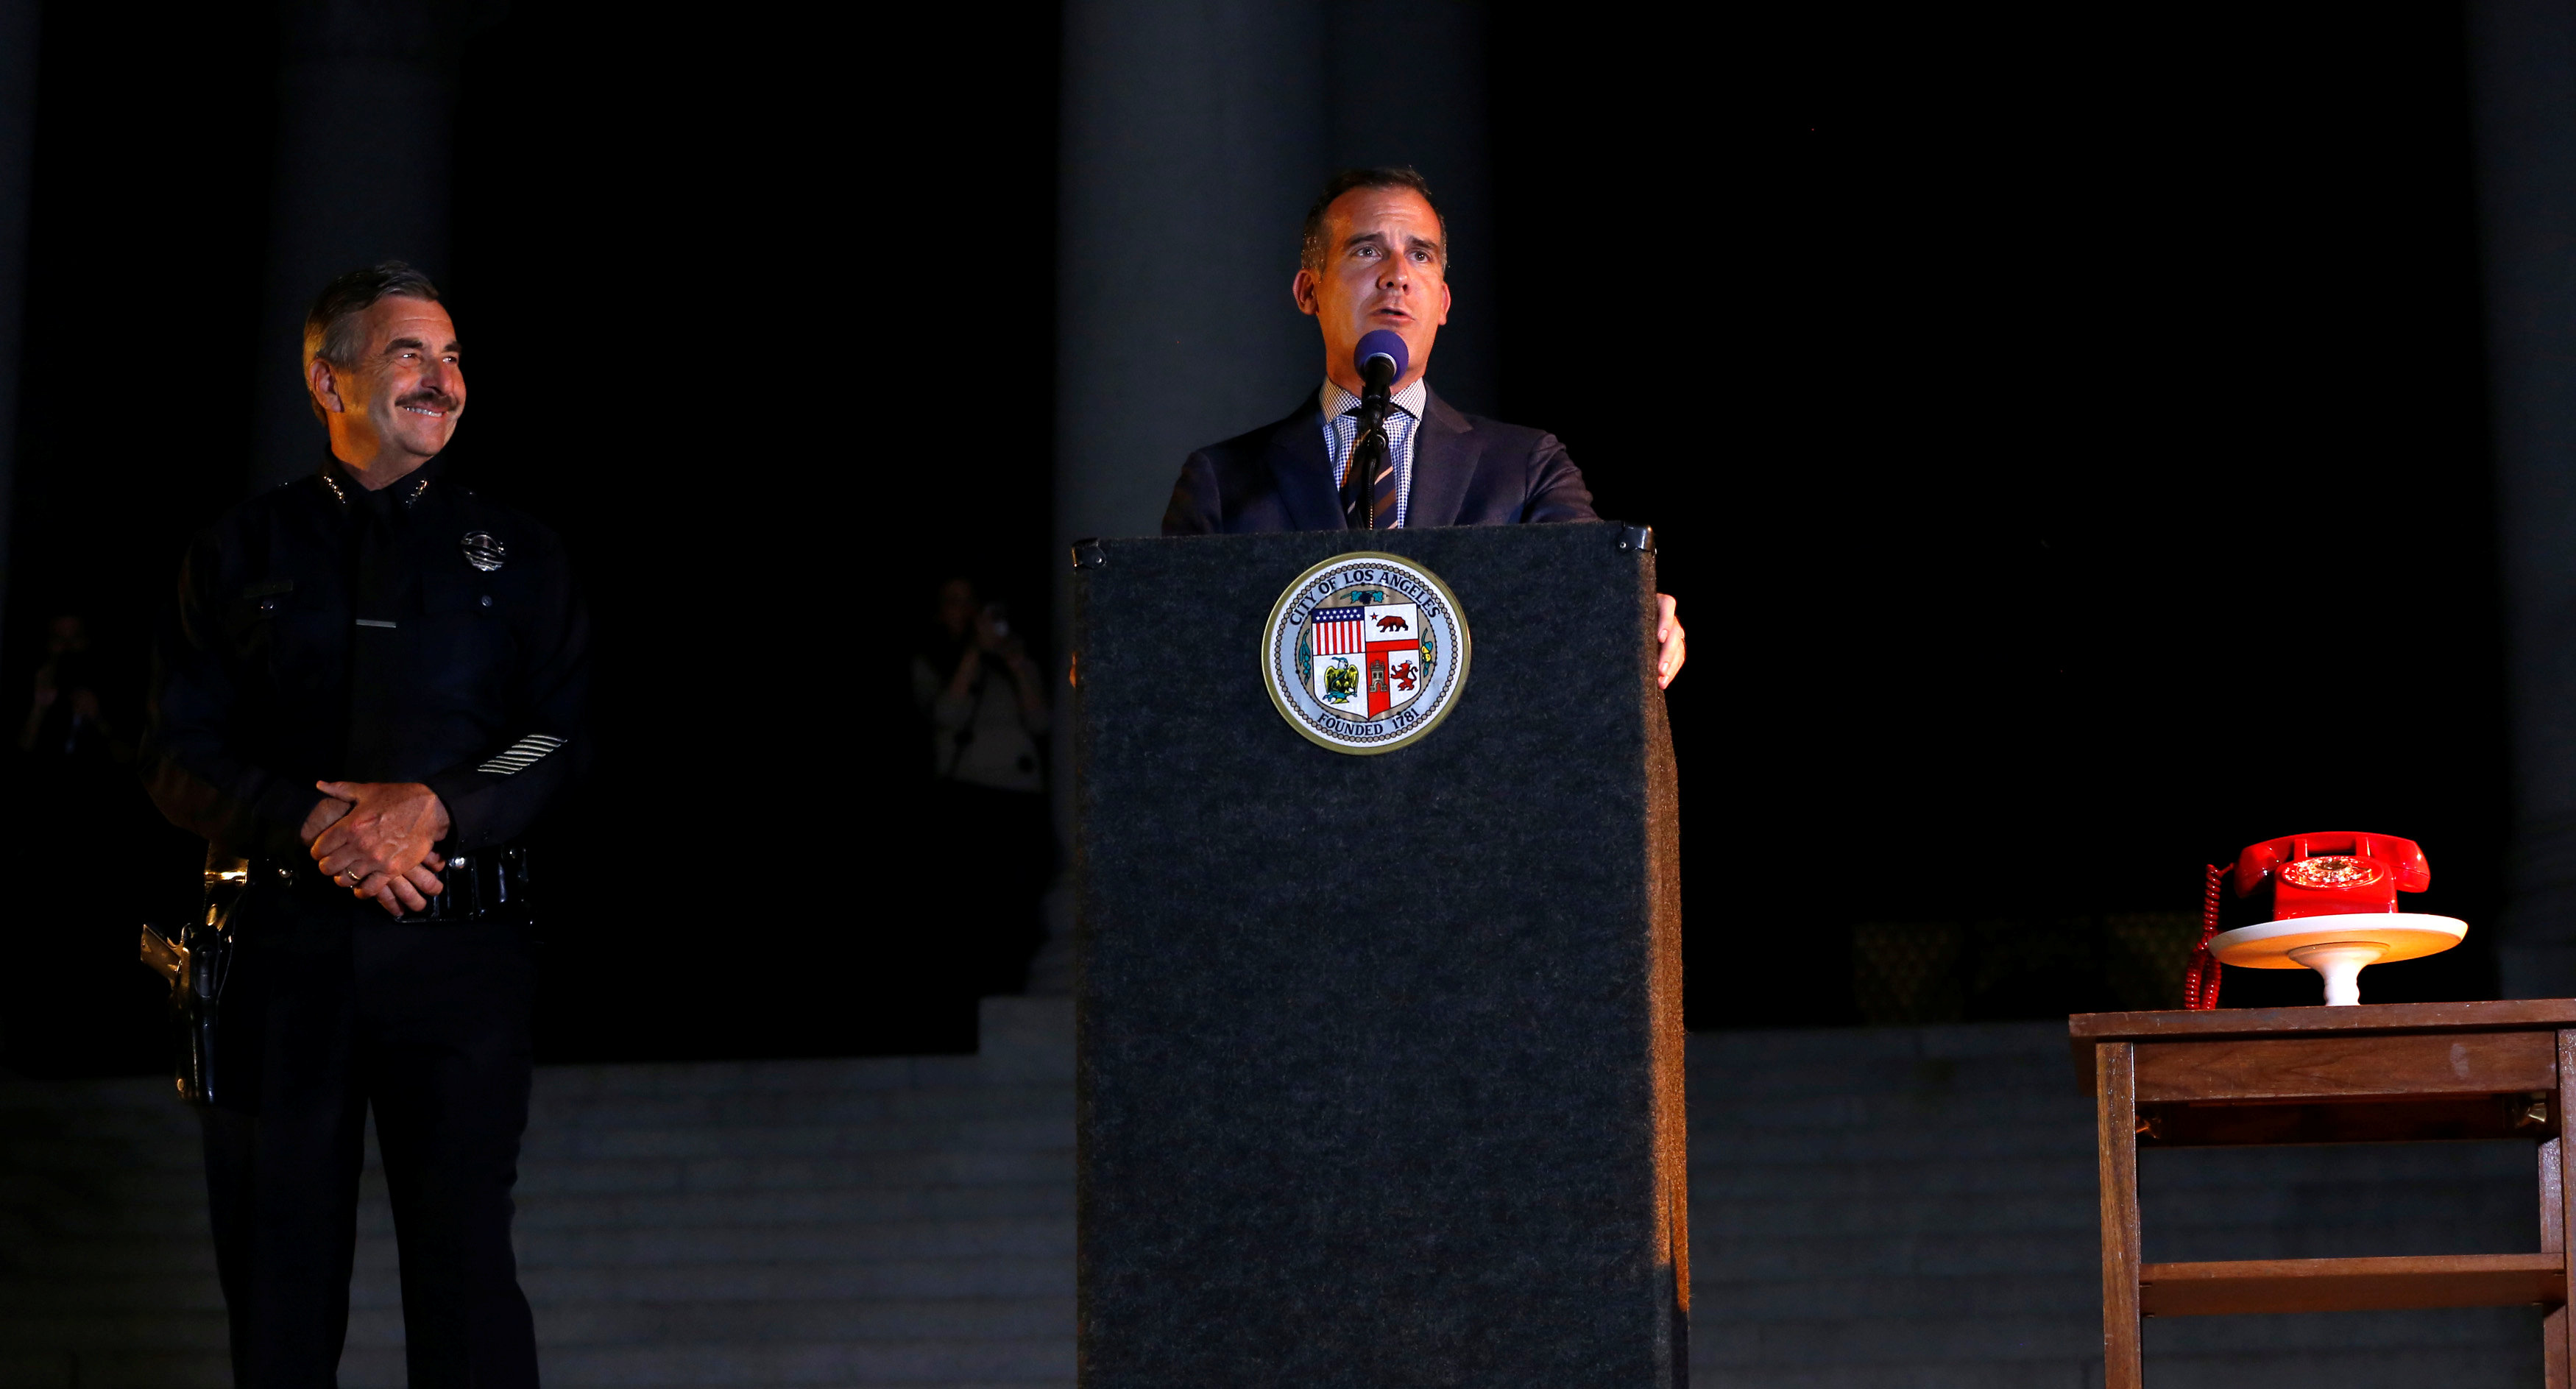 رئيس بلدية لوس أنجلوس إريك جارسيتى يلقى كلمة لاحياء ذكرى الفنان الراحل